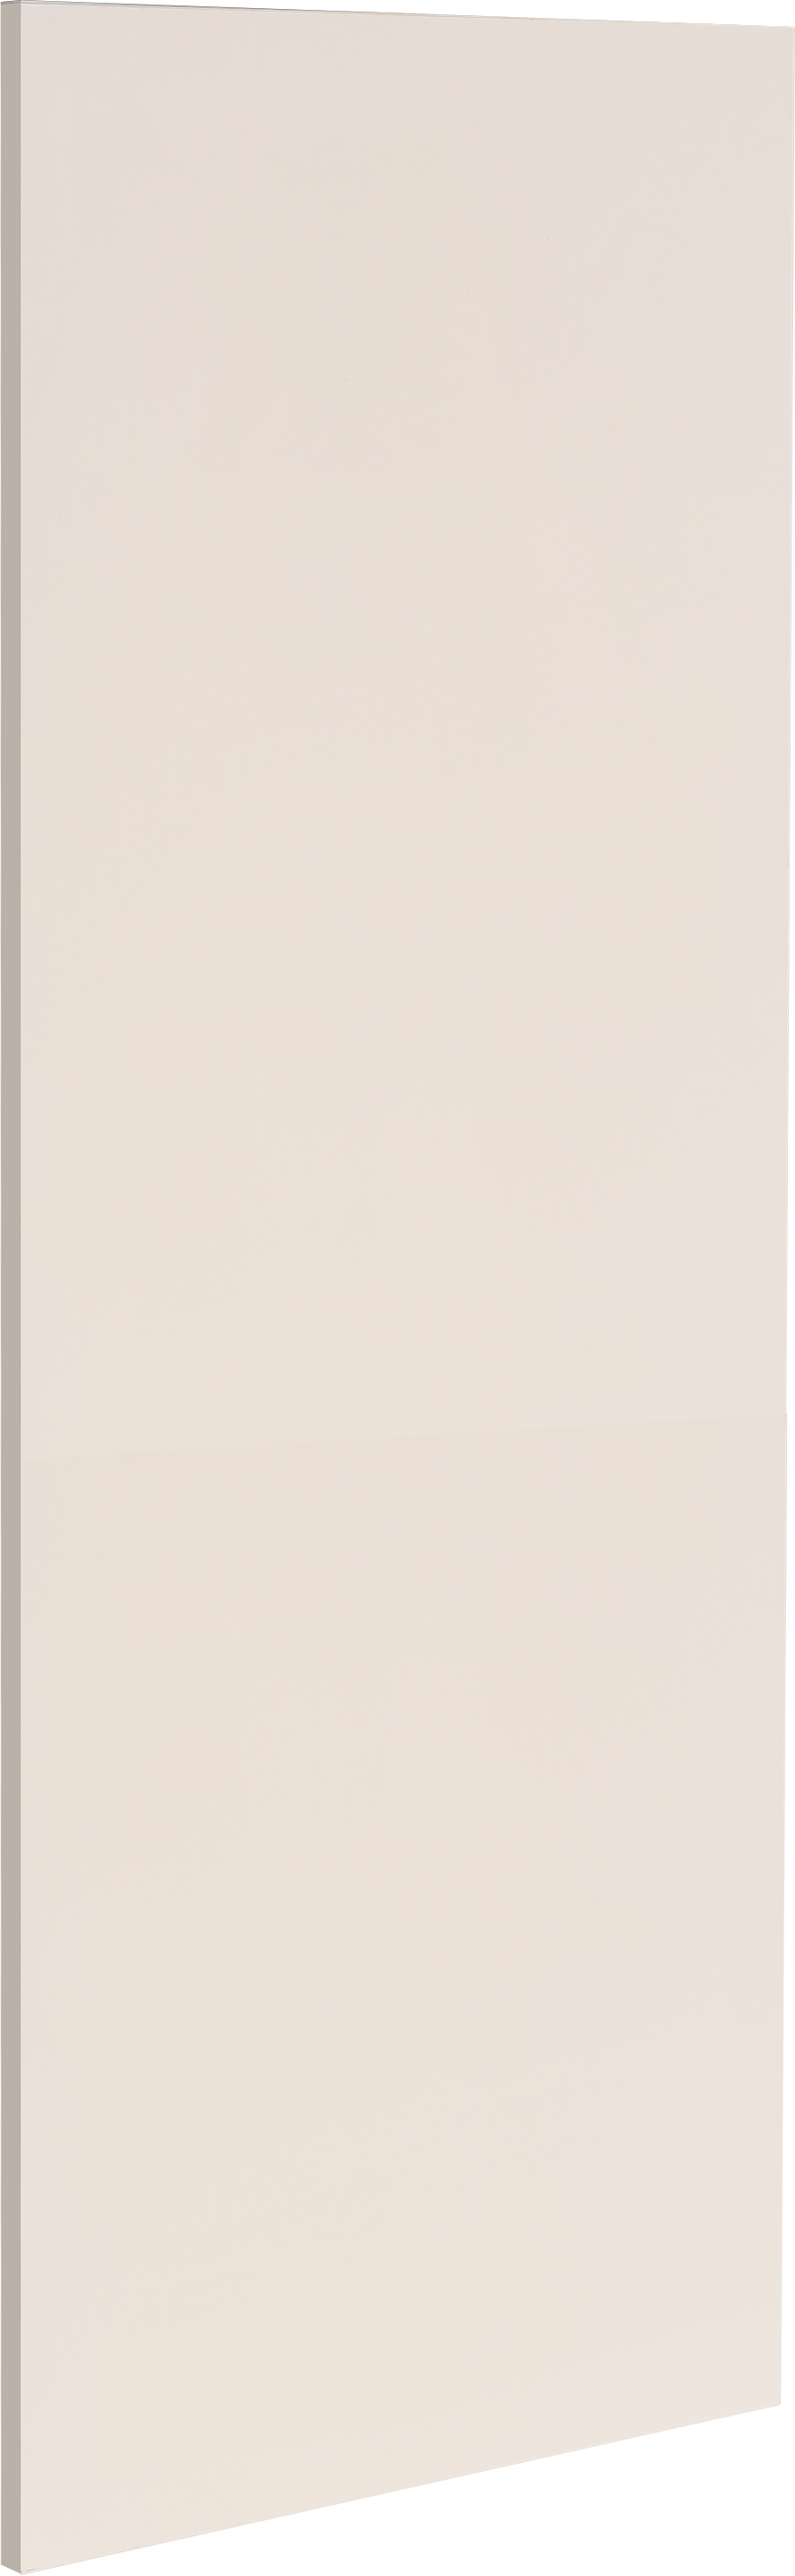 Costado delinia id marrón 37 x 89.6 cm (ancho x alto)